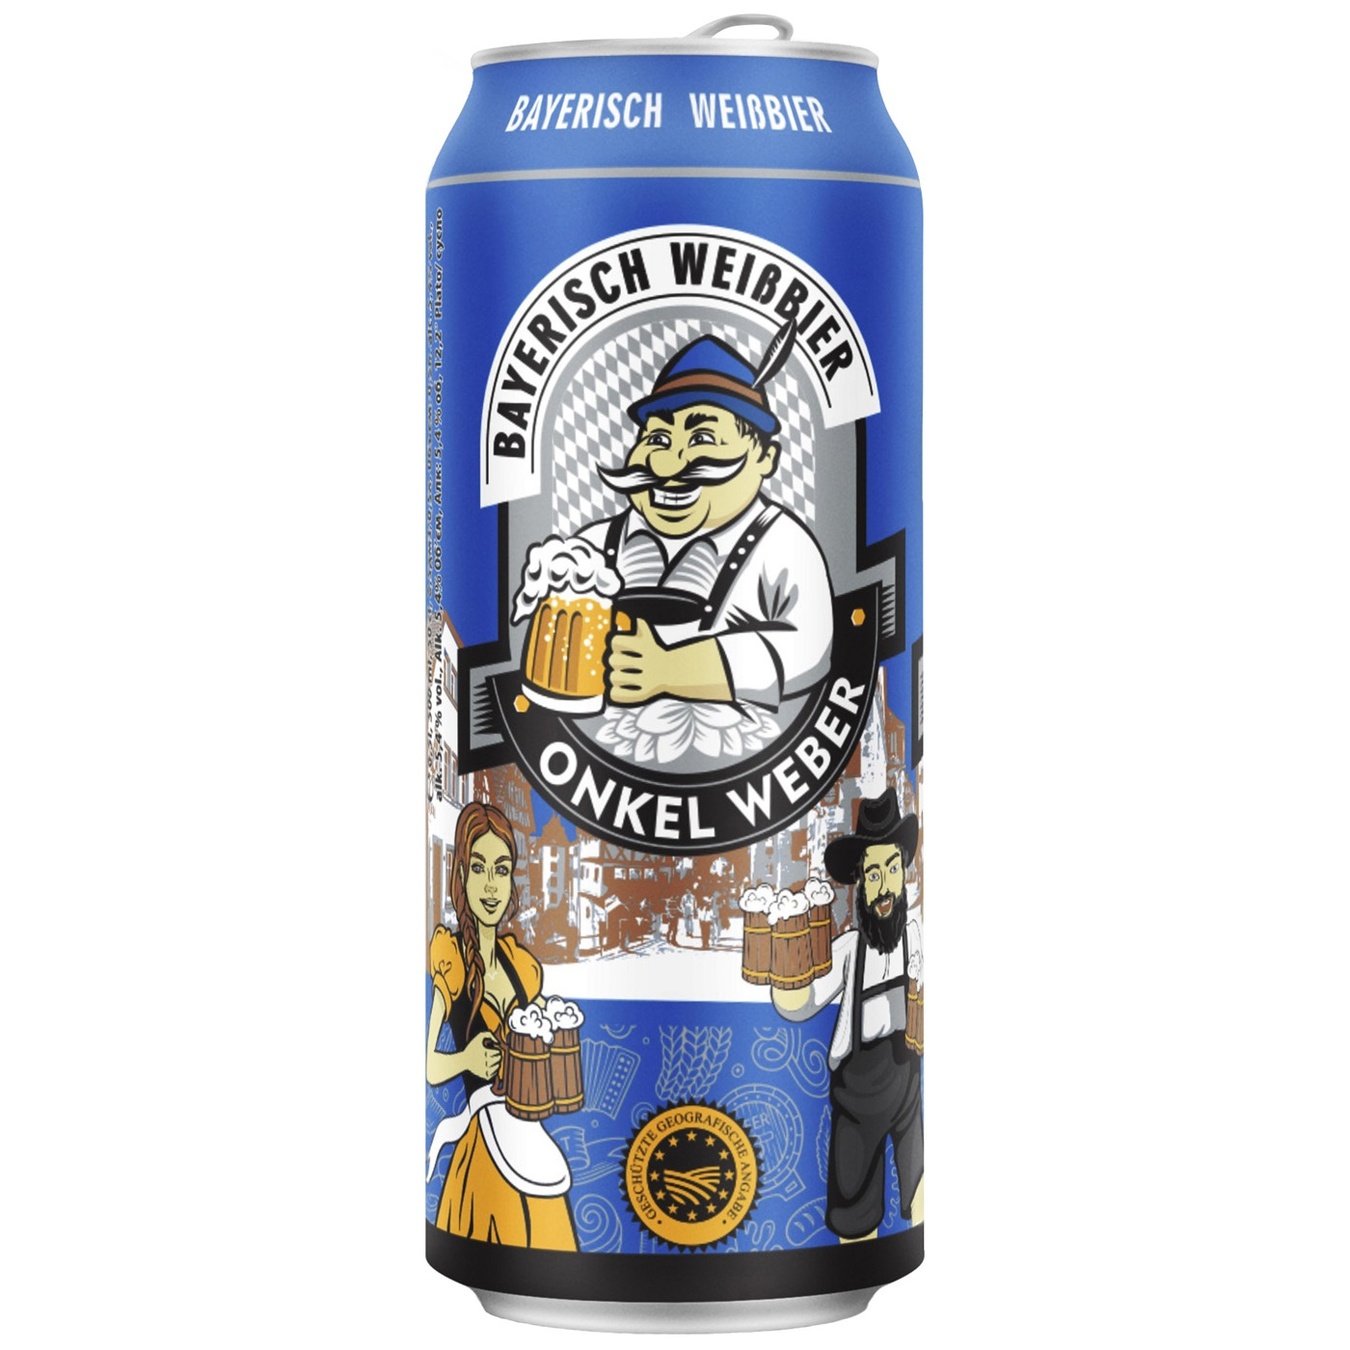 Light beer Onkel Weber Bayerisch Weissbier 5.4% 0.5 l iron can